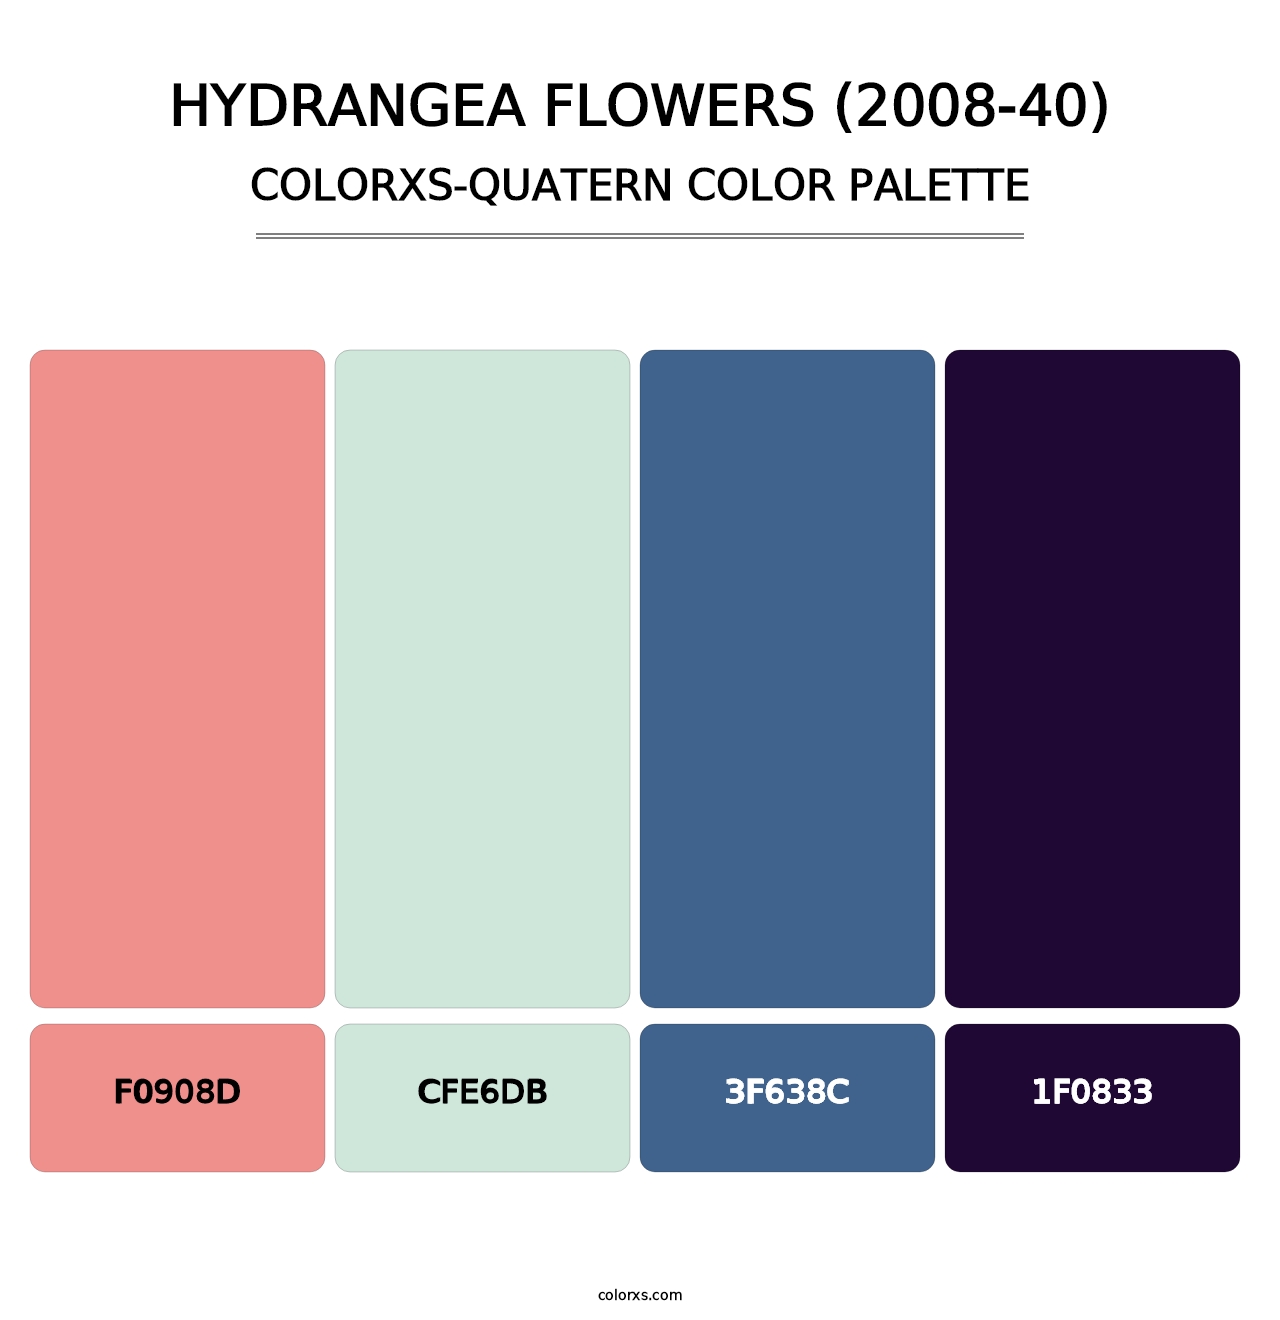 Hydrangea Flowers (2008-40) - Colorxs Quatern Palette